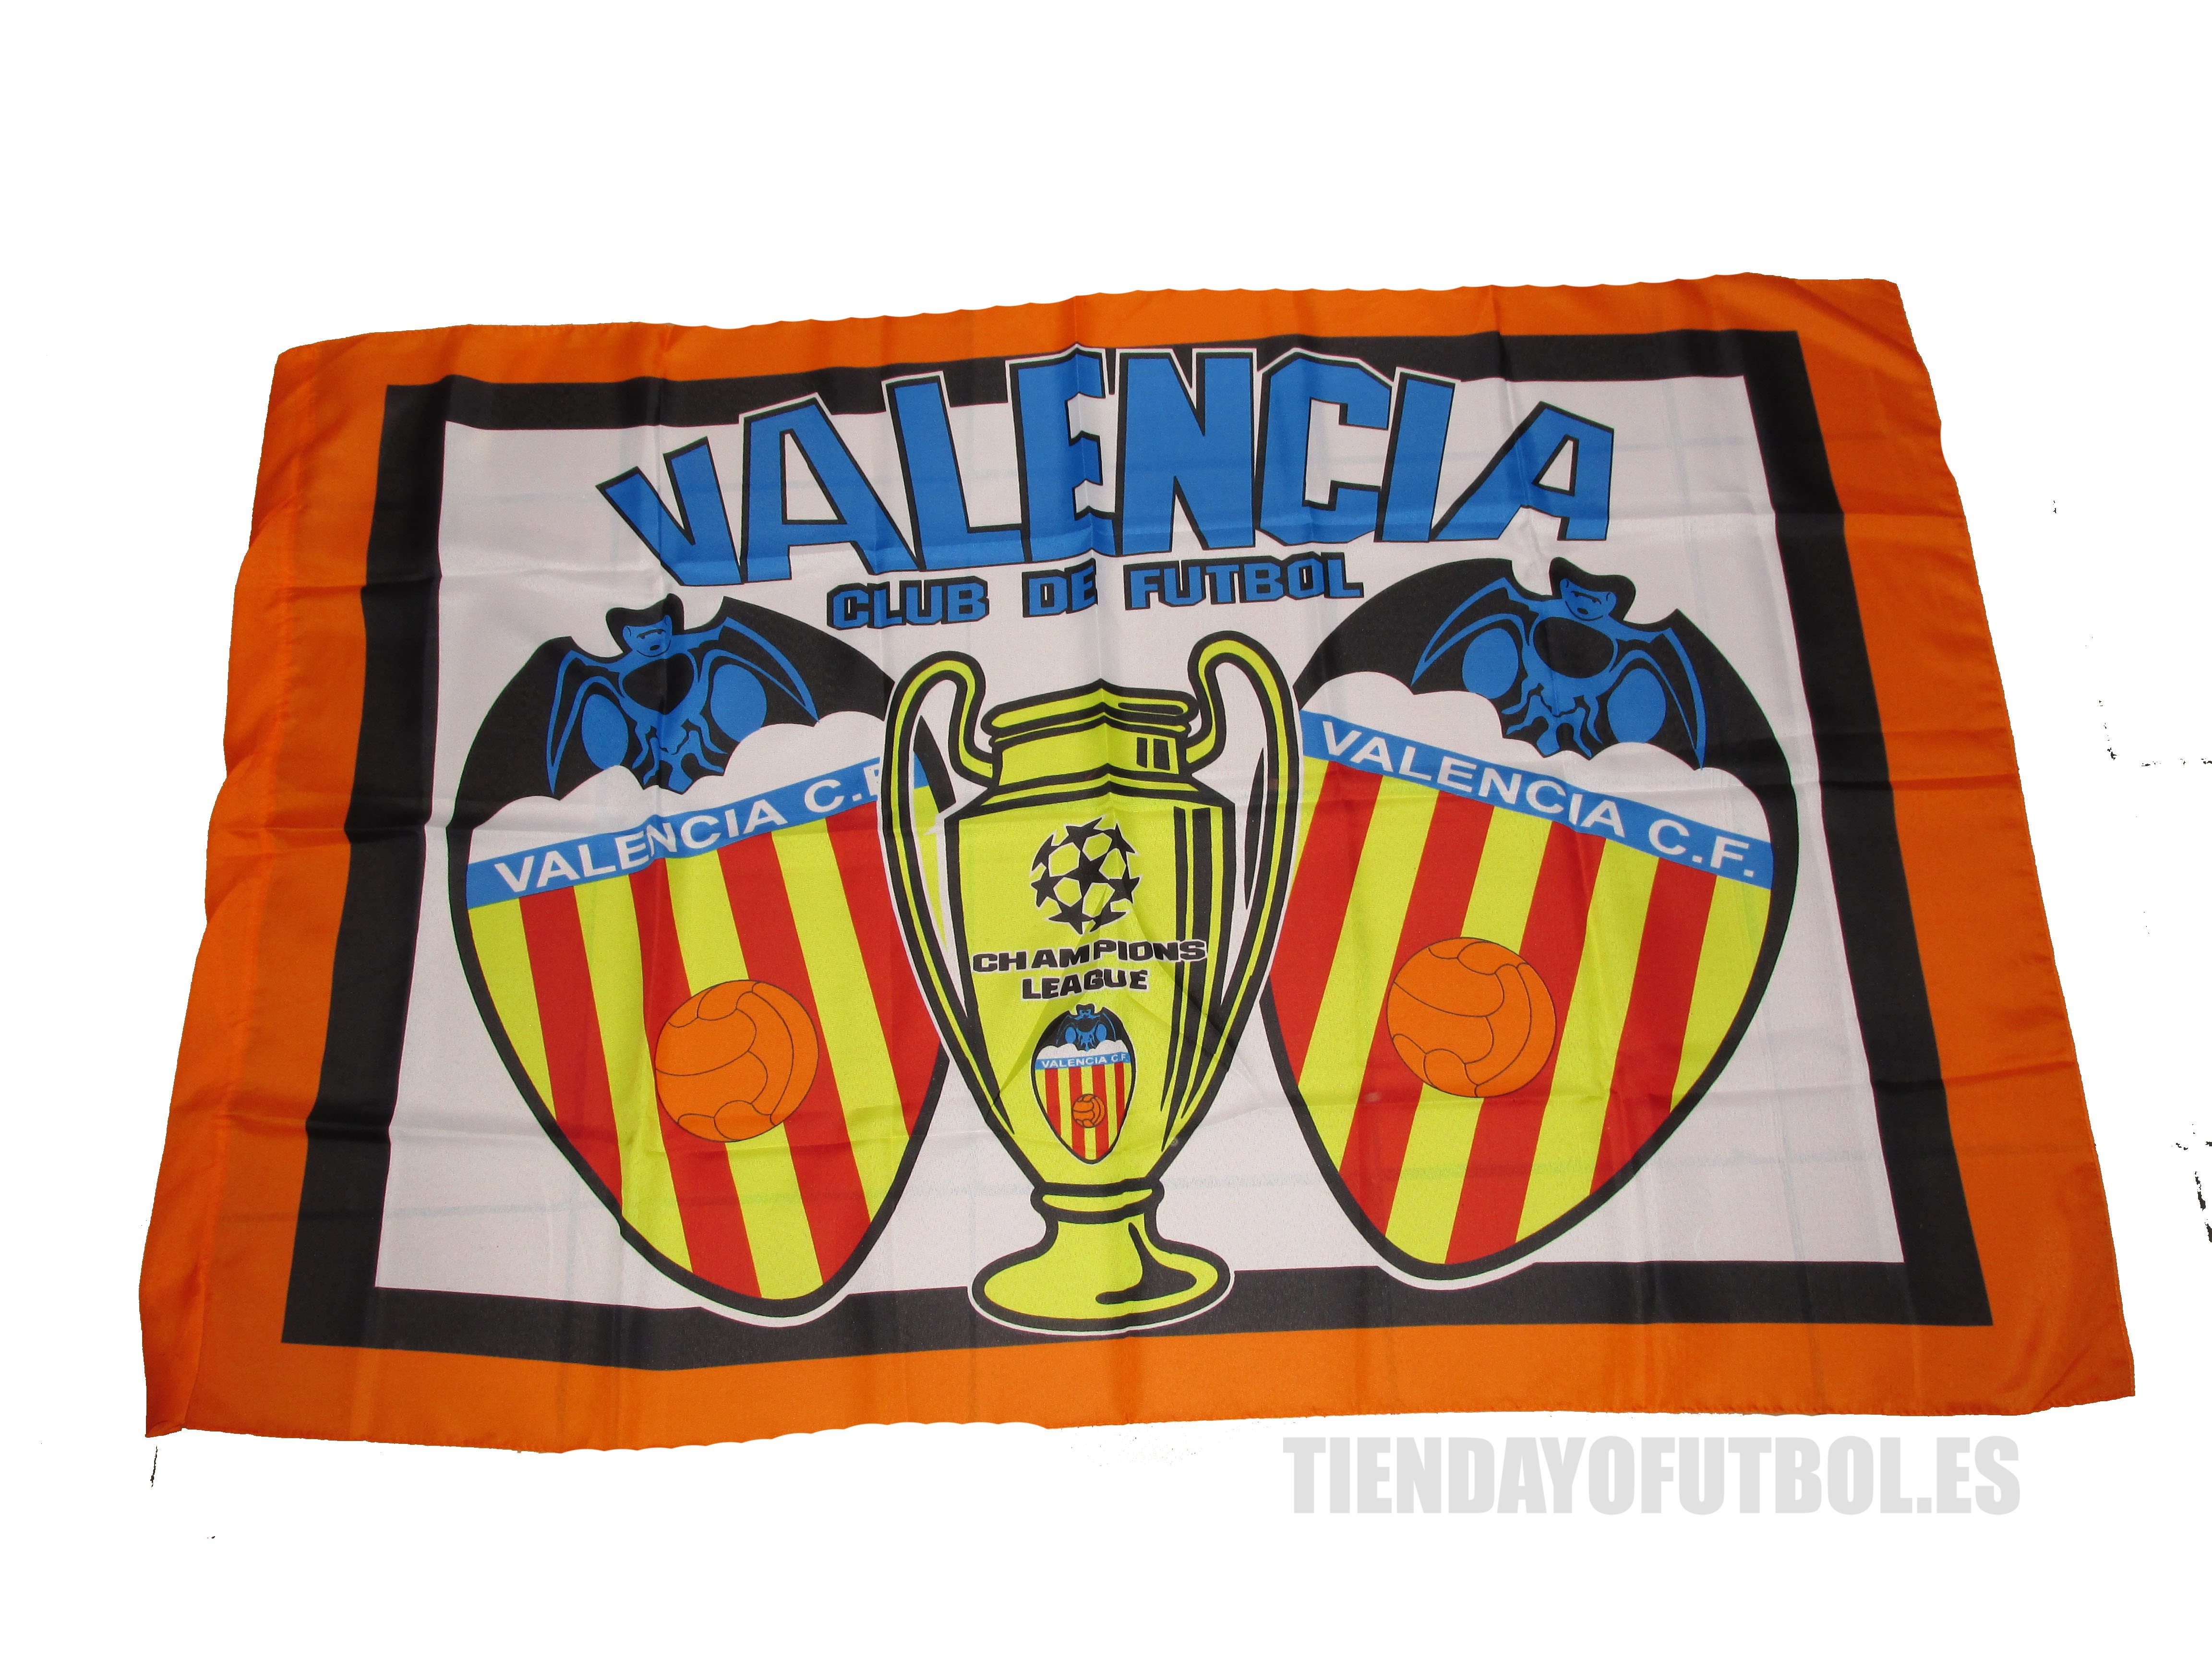 Tienda Oficial - Valencia Club de Fútbol